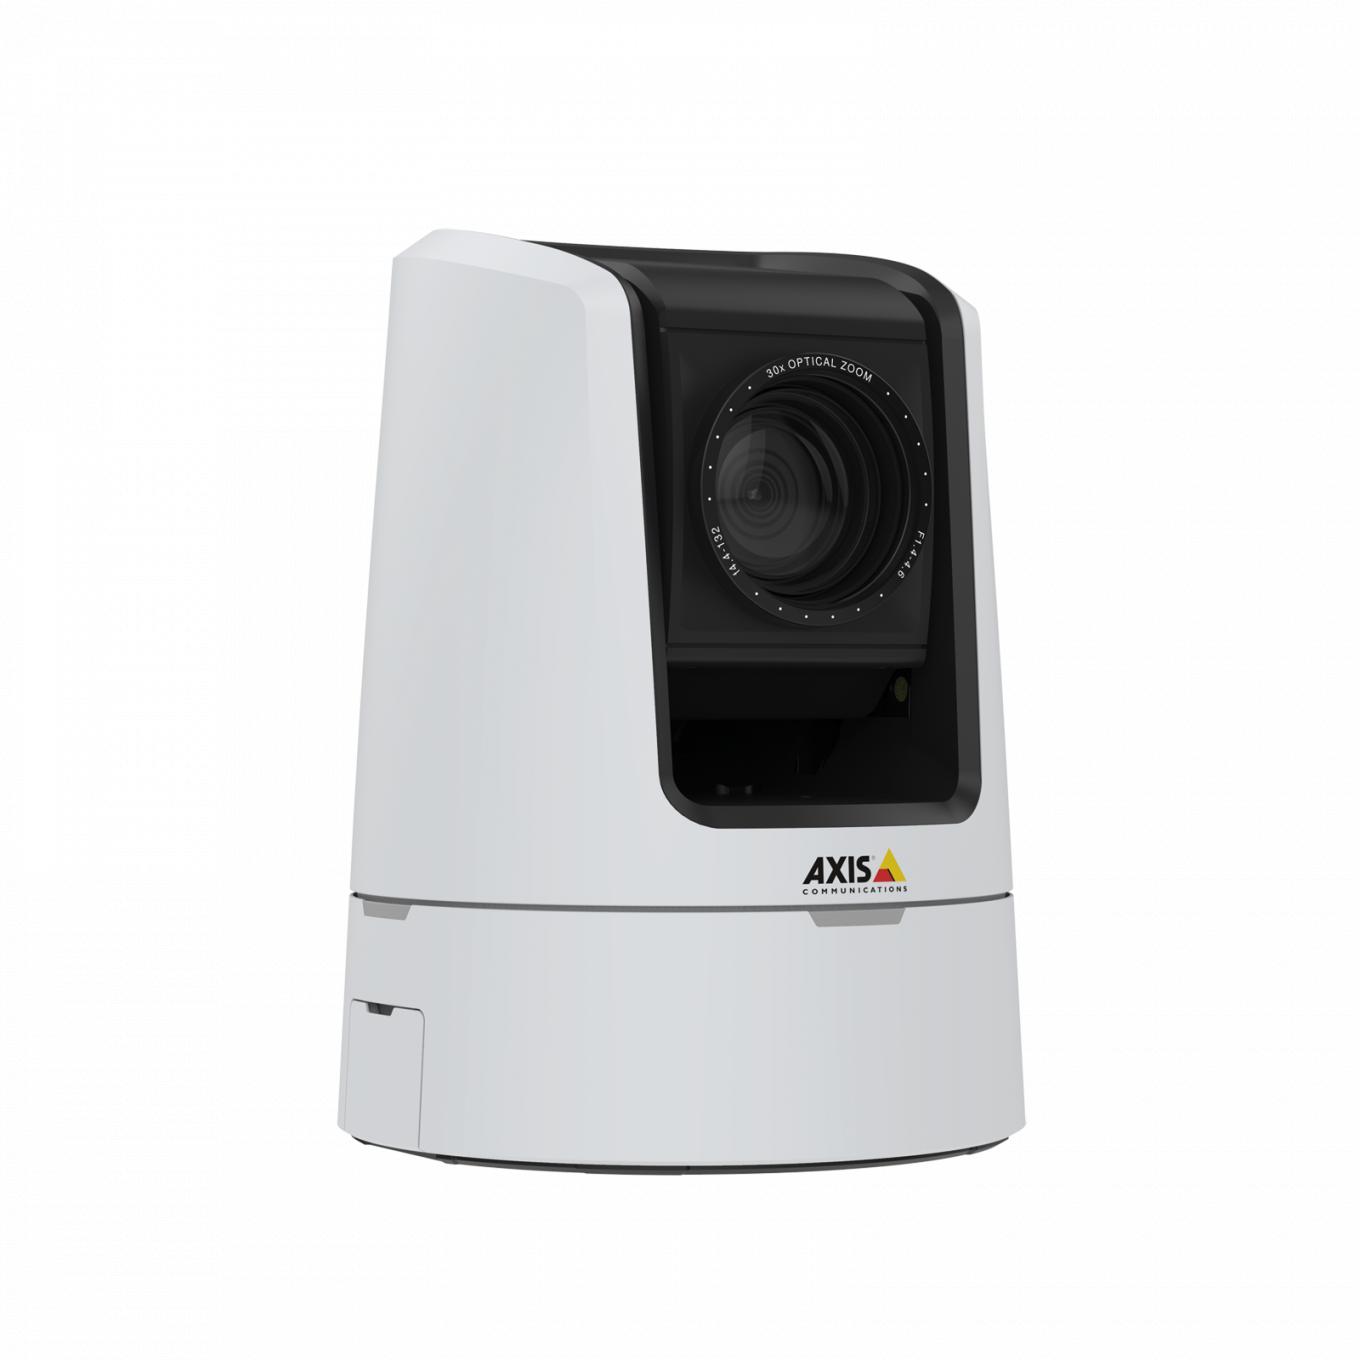 Die PTZ-Netzwerk-Kamera AXIS V5925 bietet HDTV 1080p in Sendequalität.